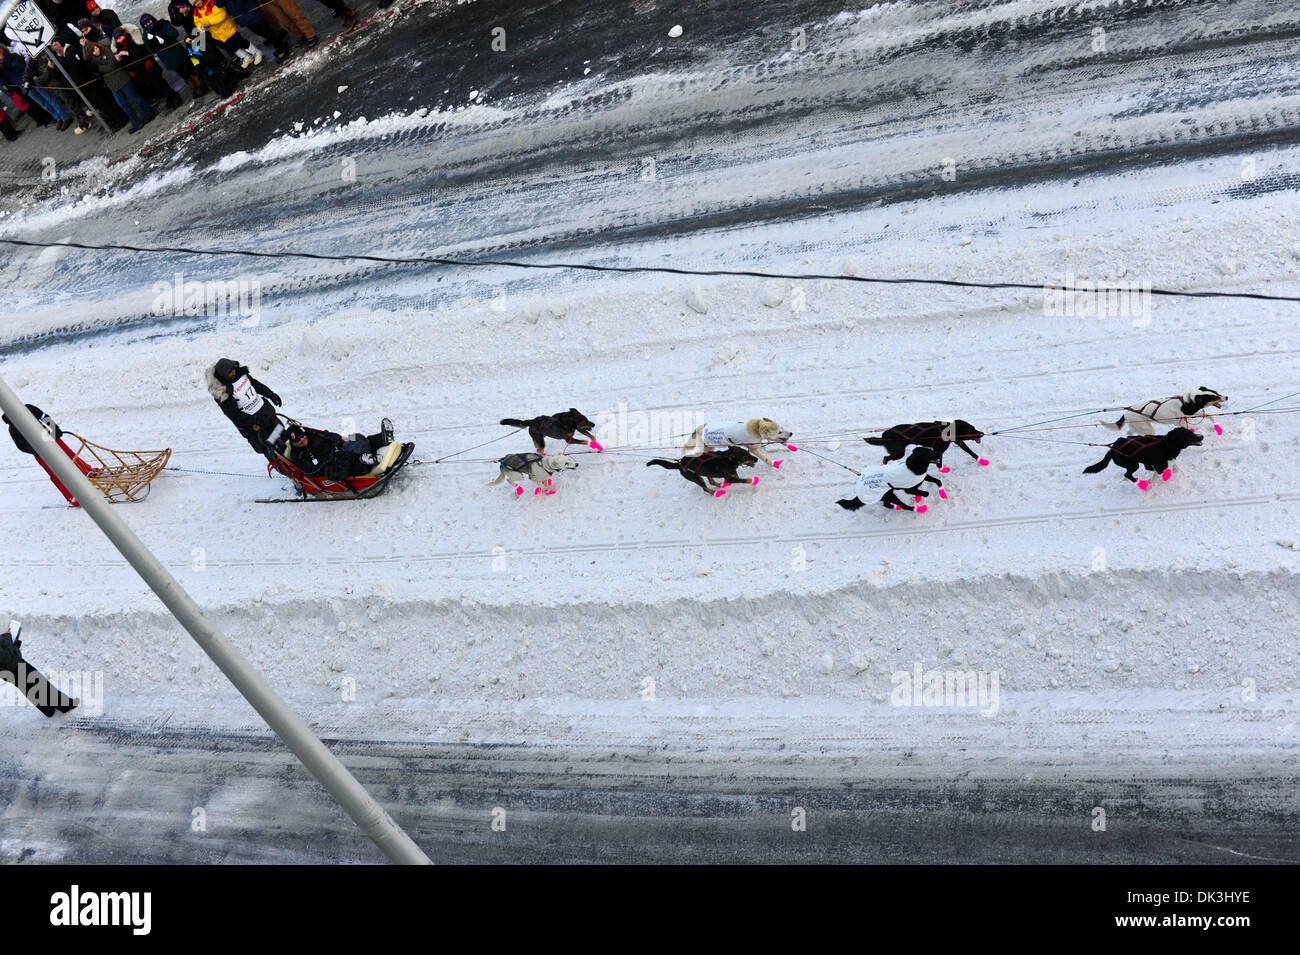 Mar 5, 2011 - Anchorage in Alaska, U.S. - Quattro volte vincitore Iditarod LANCE MACKEY decolla verso il basso 4a Avenue, Anchorage in Alaska,, Iditarod 2011. (Credito Immagine: © Ron Levy/ZUMAPRESS.com) Foto Stock